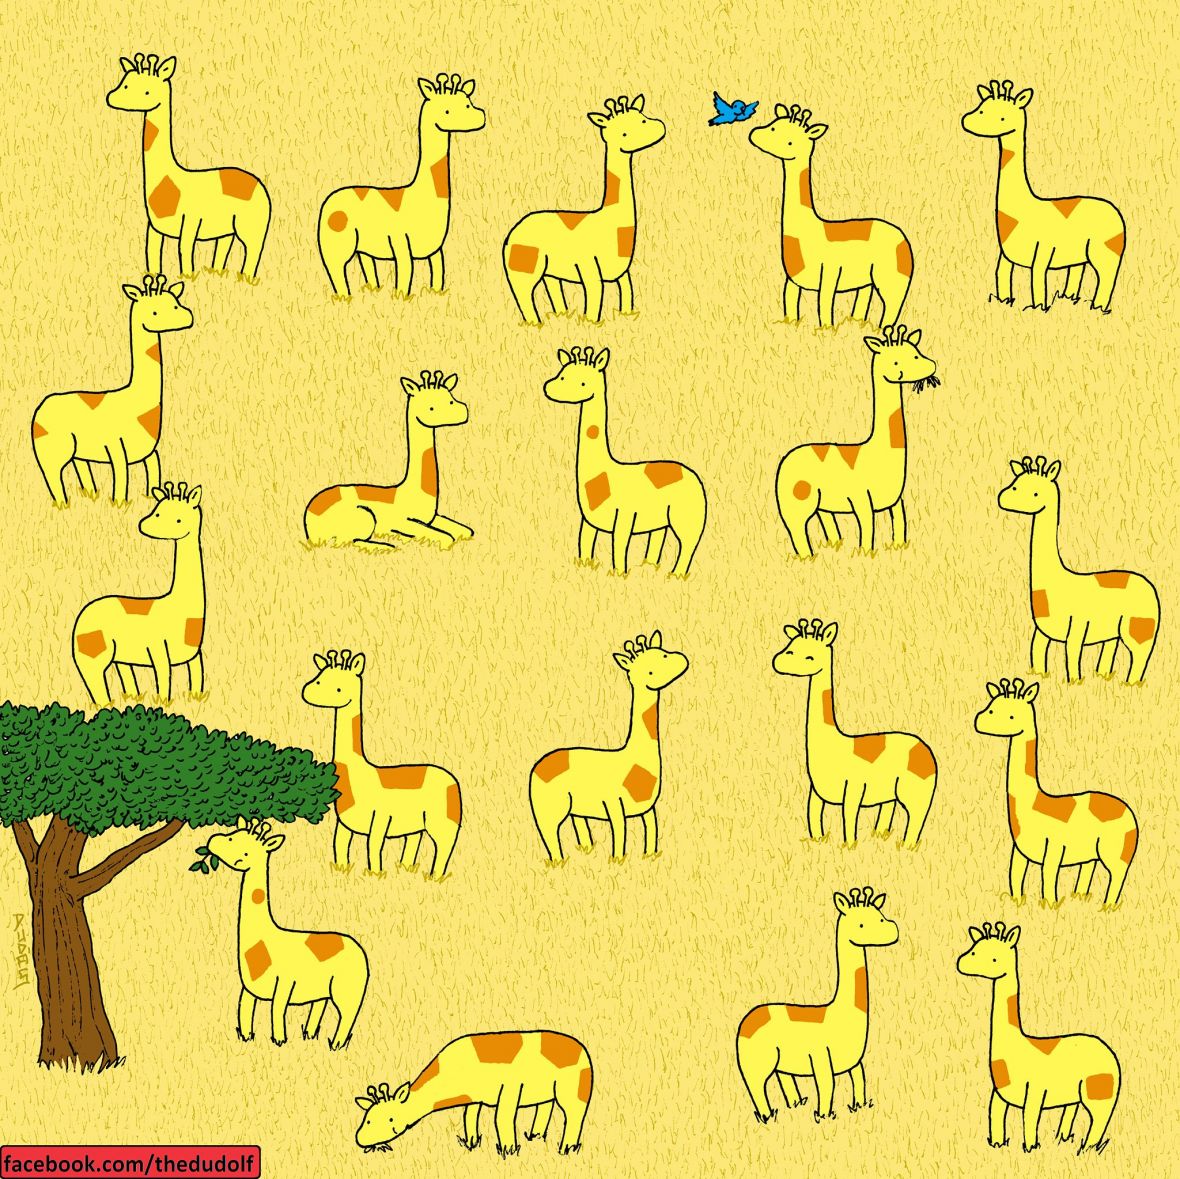 Koja žirafa nema svoju dvojnicu? - undefined